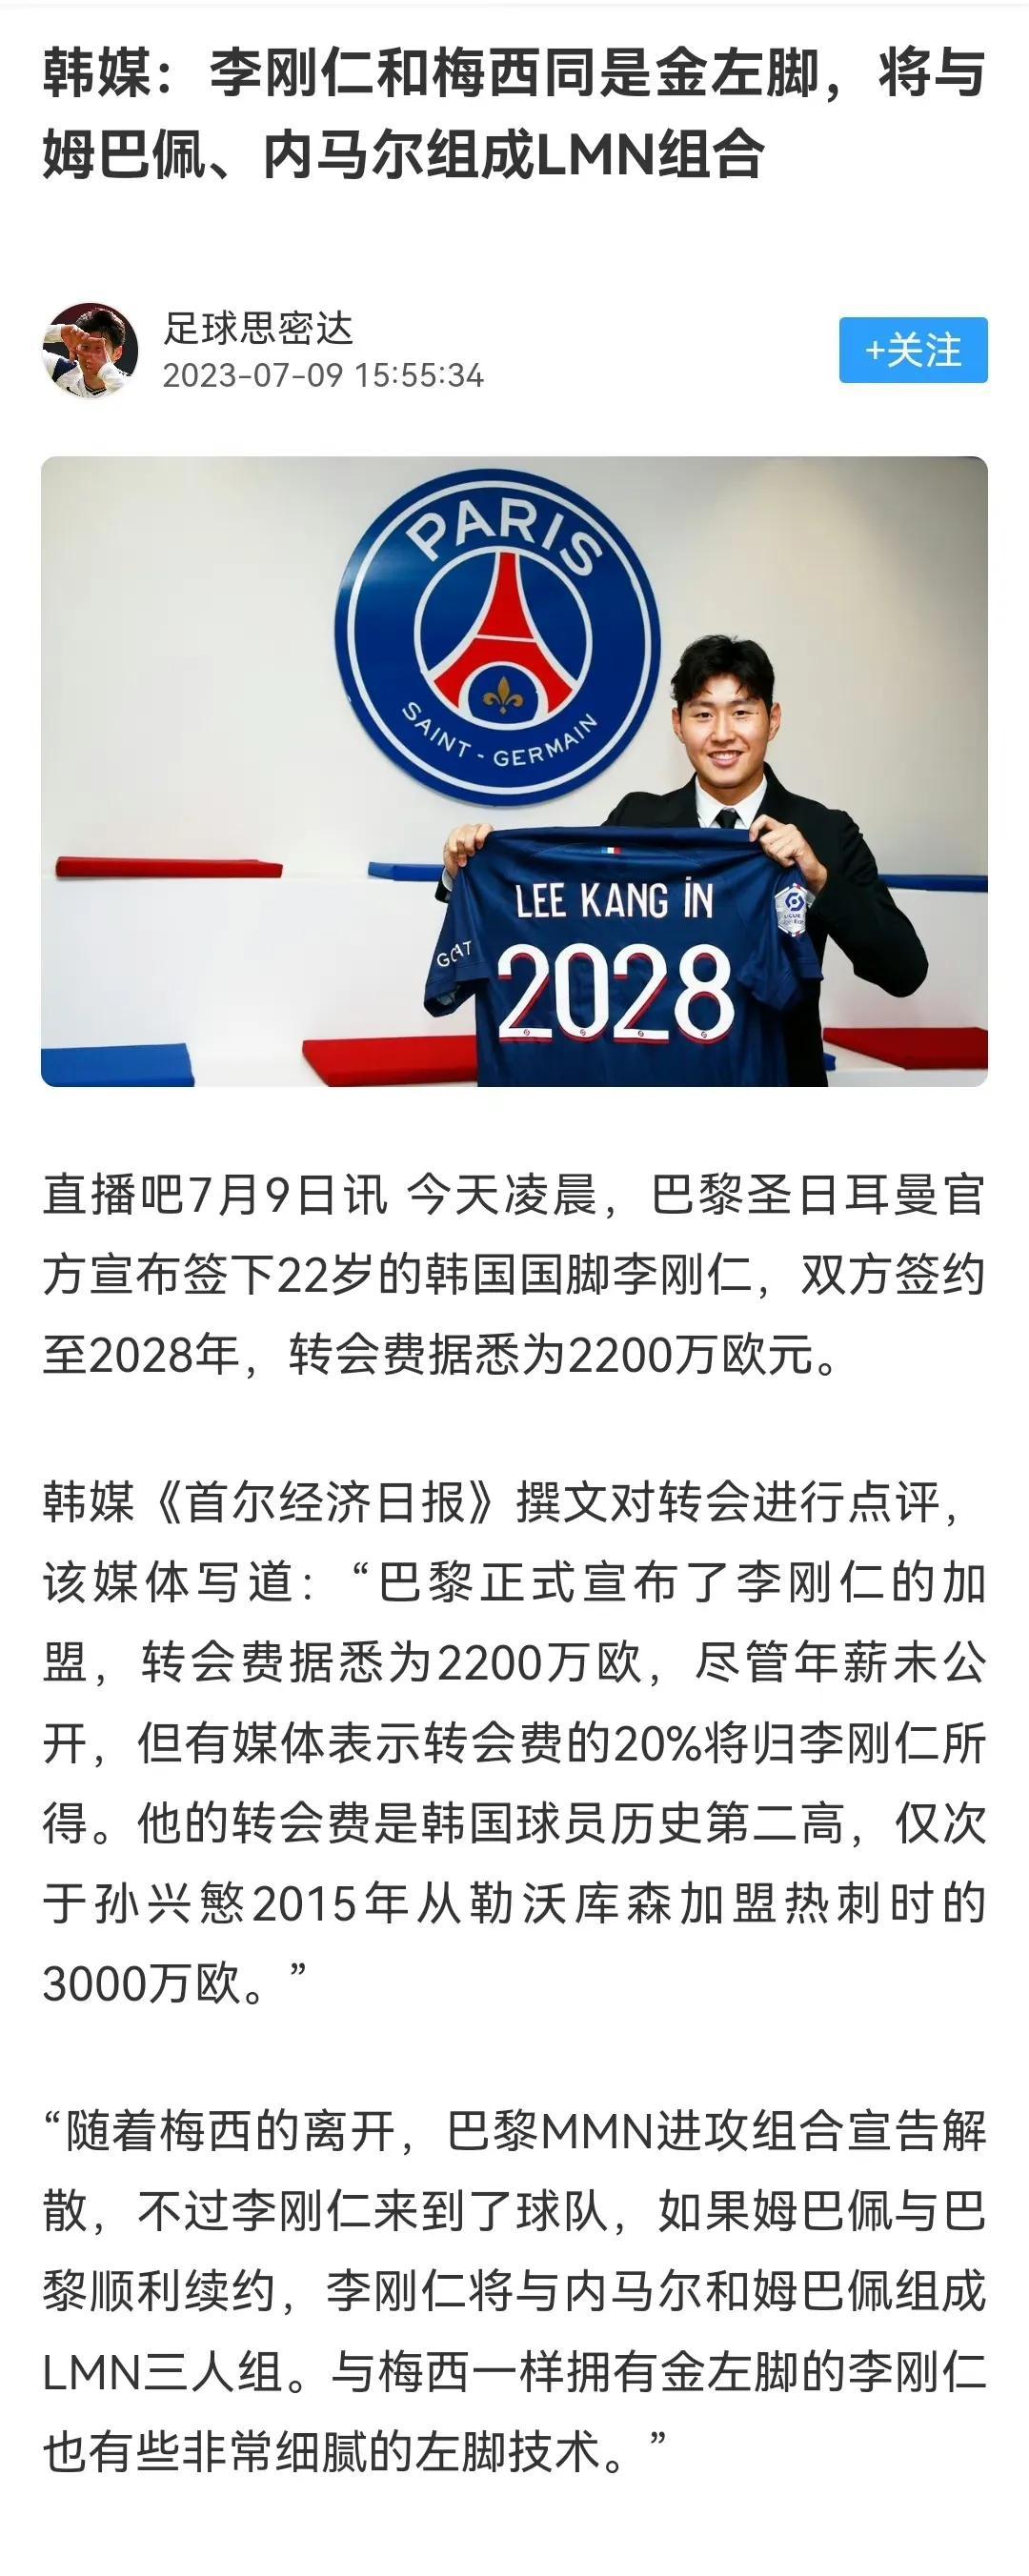 韩国媒体说：李刚仁也是黄金左脚正好替代梅西，将与内马尔，姆巴佩组成LMN组合。
(1)